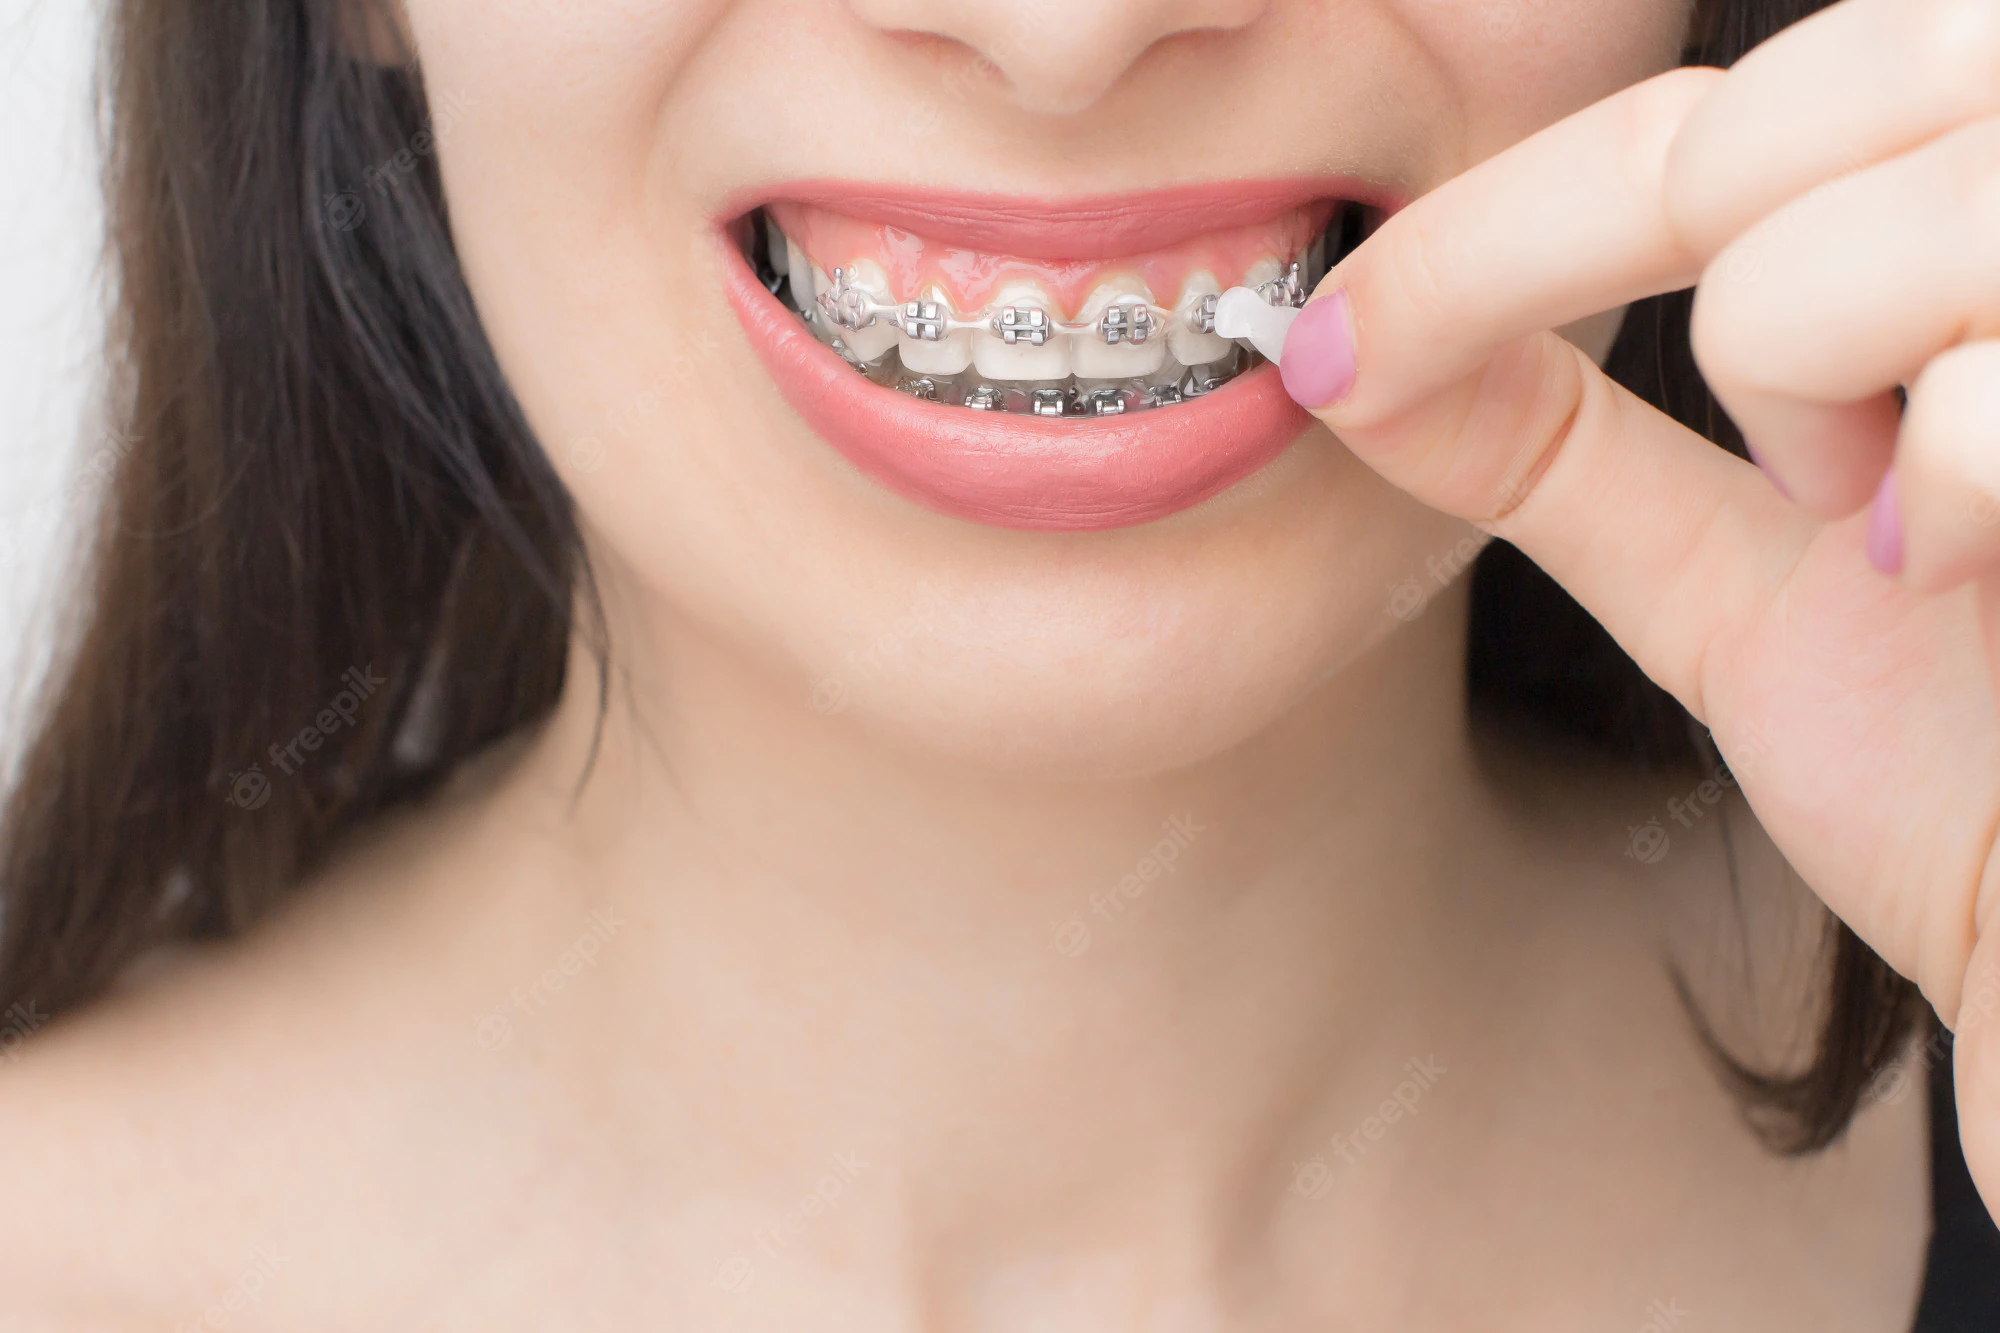 La cire orthodontique : qu'est-ce que c'est et comment l'utiliser ?